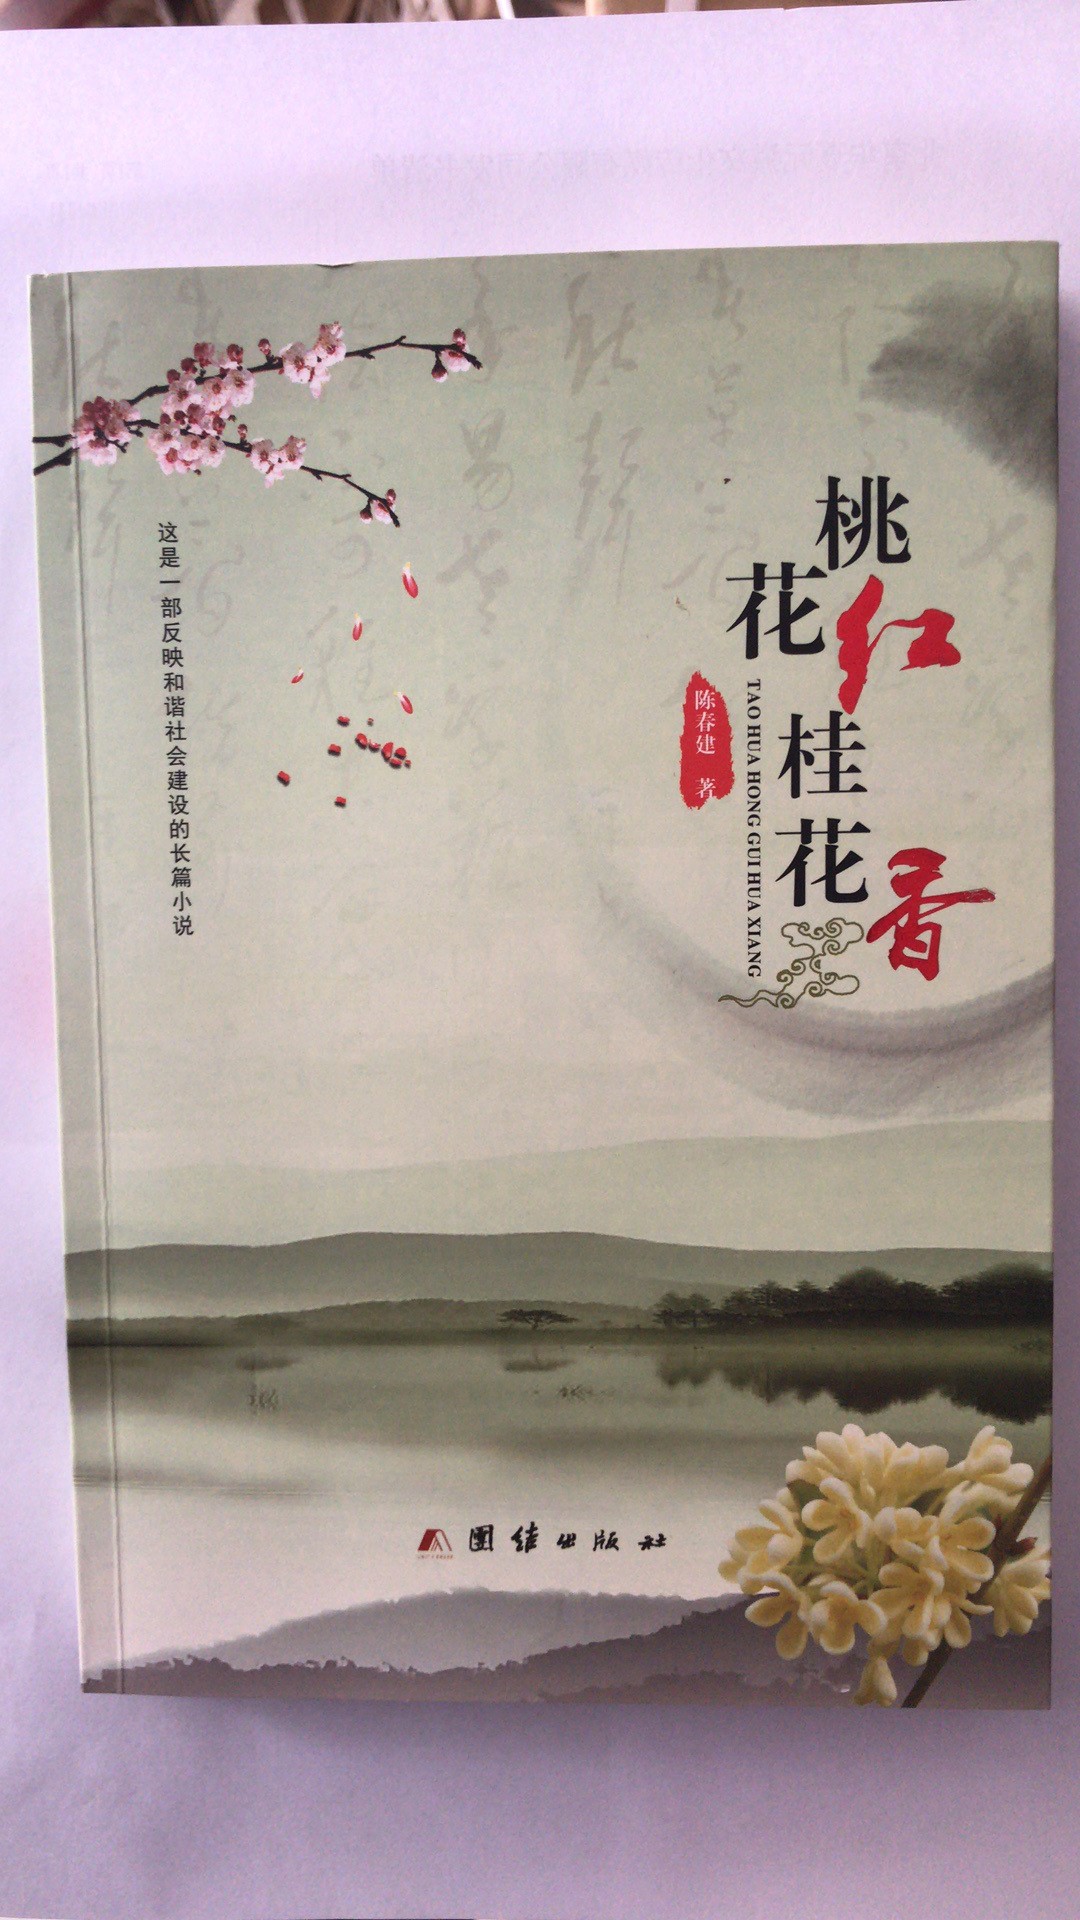 《桃花红桂花香》 陈春著  团结出版社出版，二月河作序  南阳作家